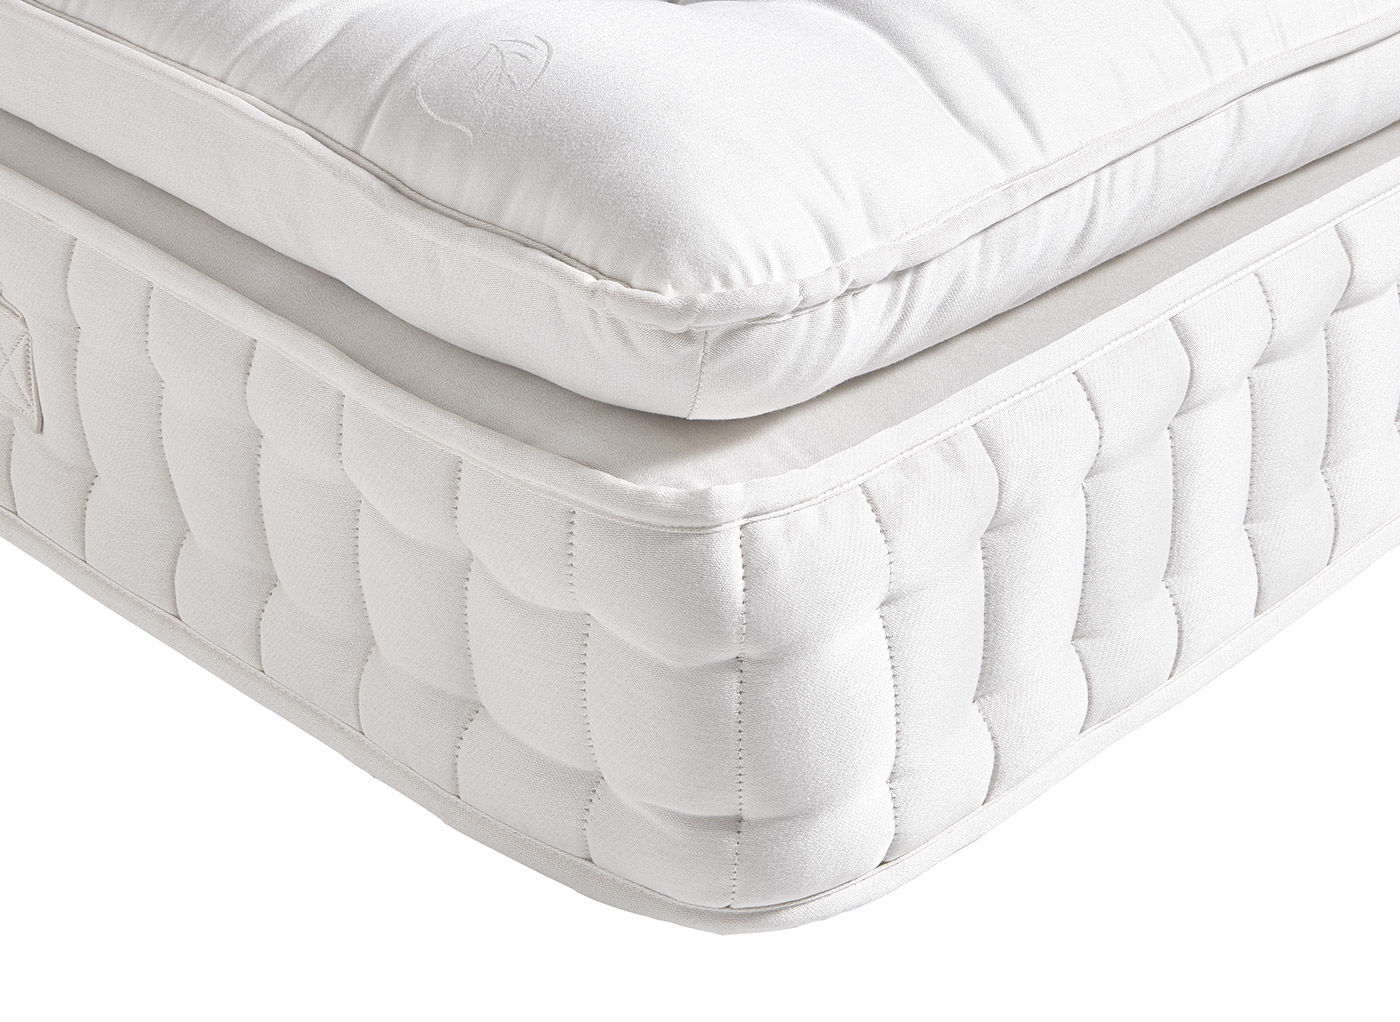 ultra soft king mattress